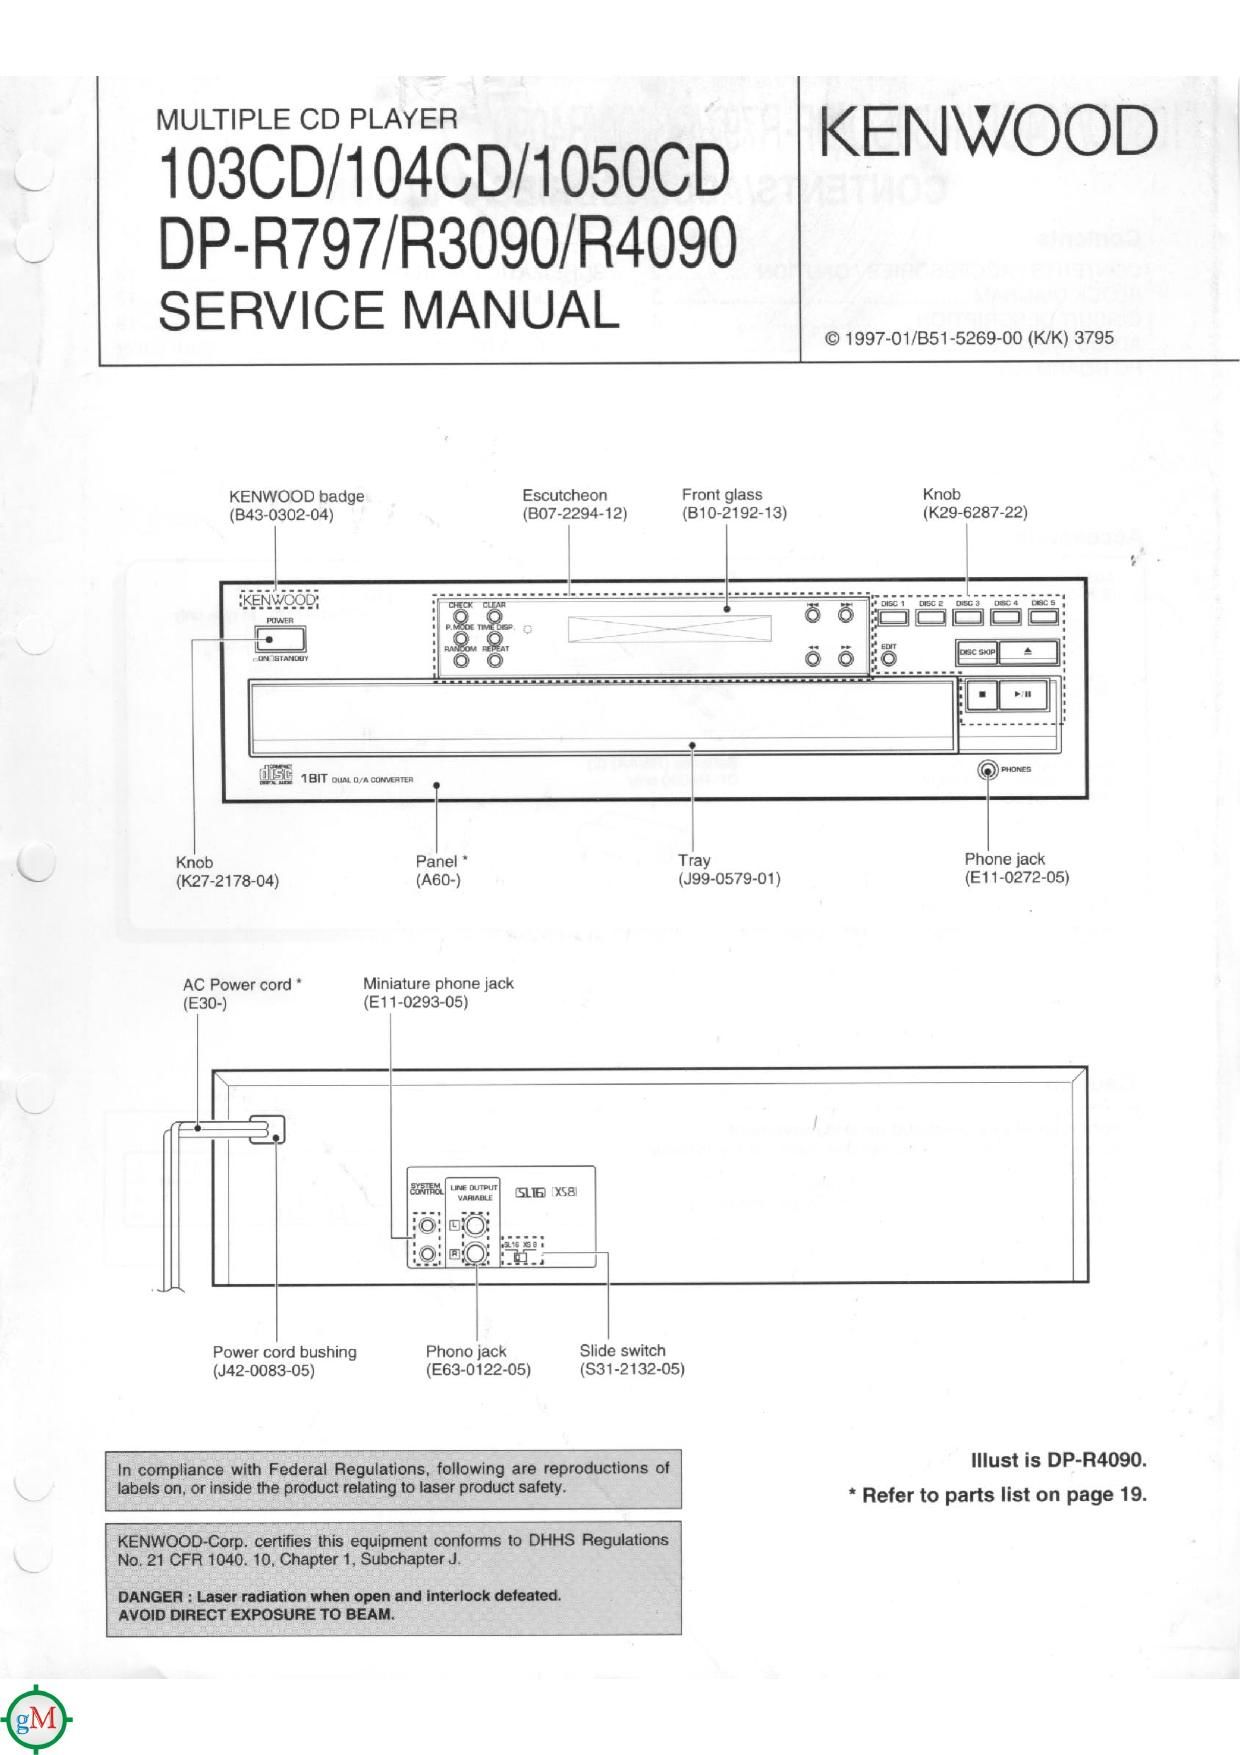 Kenwood DPR 797 Service Manual